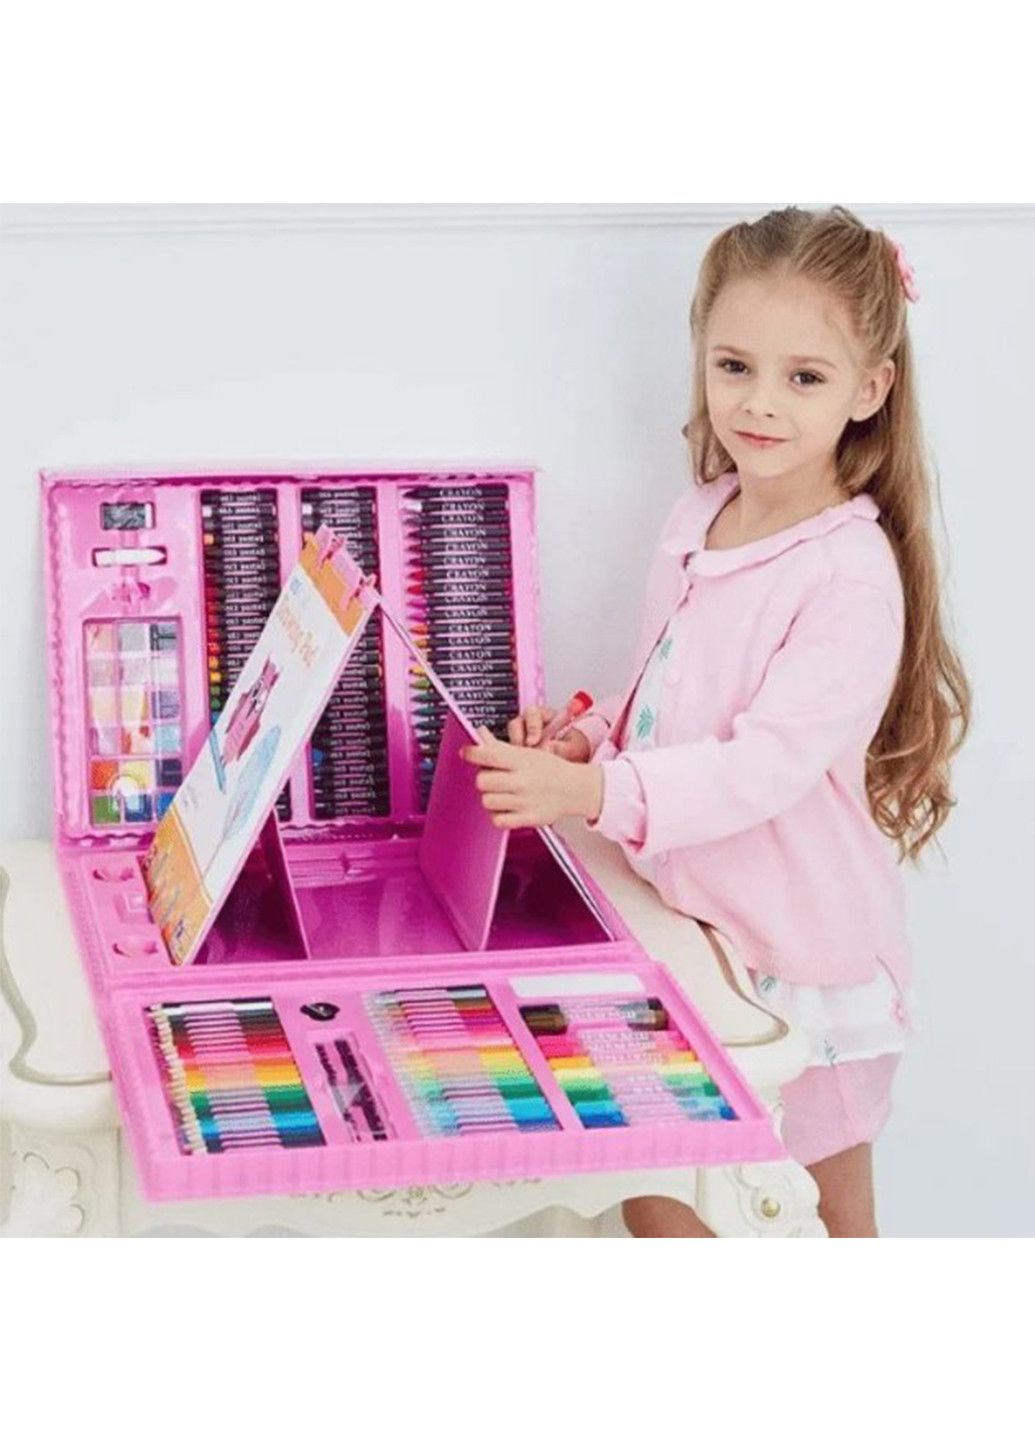 Набор для детского творчества в чемодане из 208 предметов “Чемодан творчества” Розовый Good Idea розовая